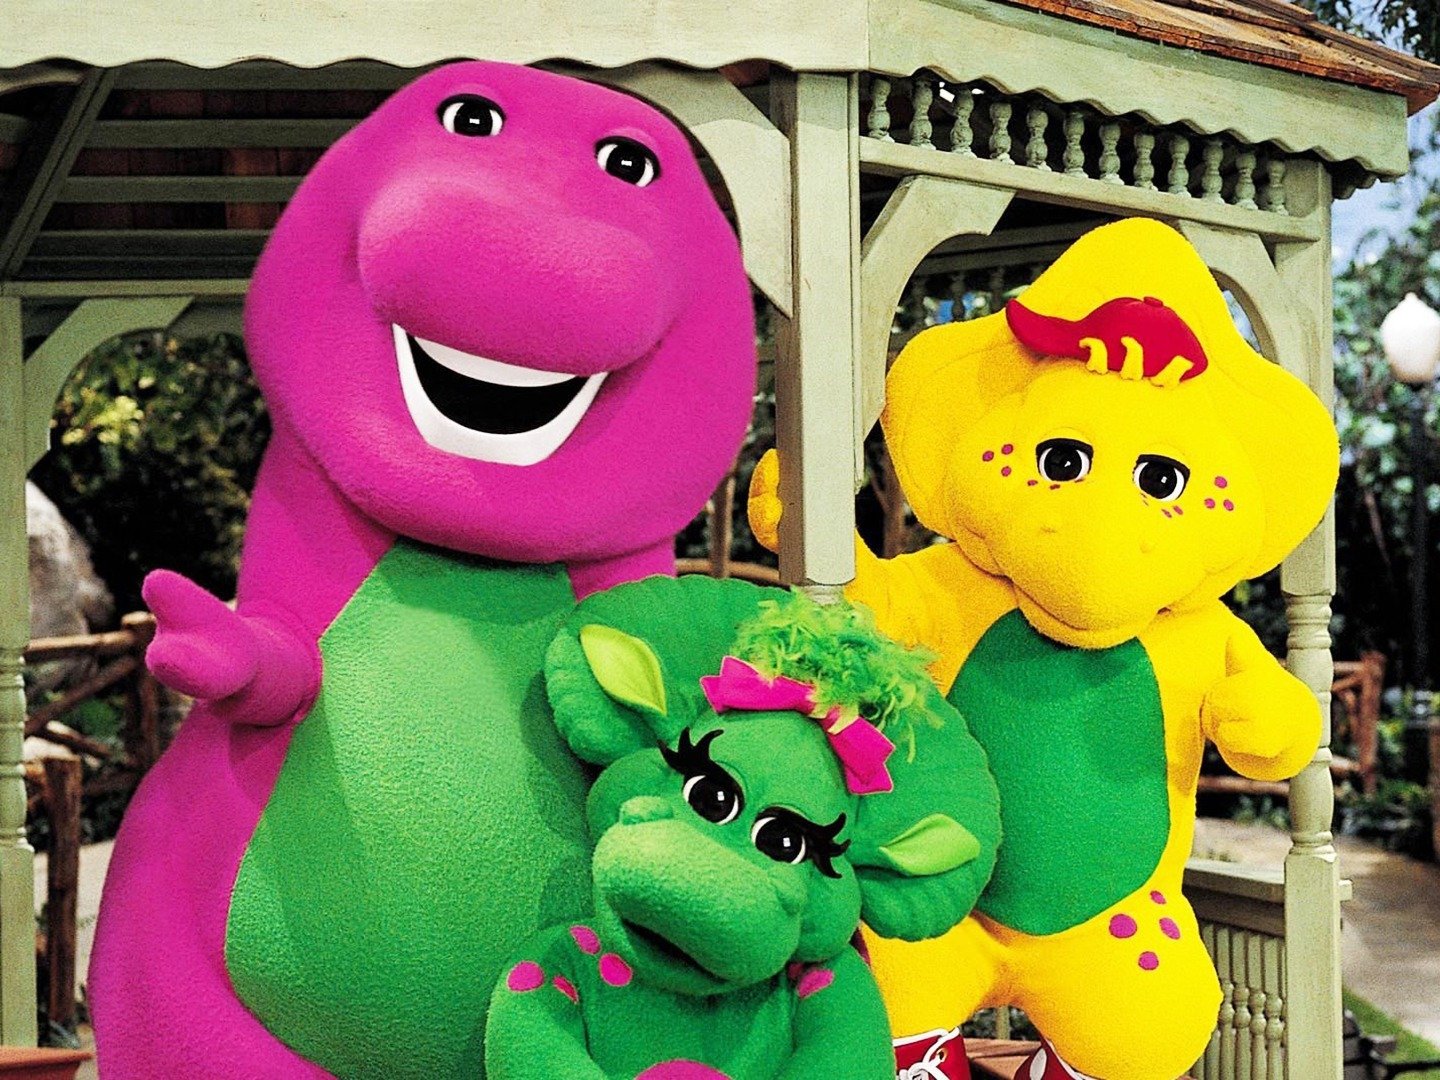 Barney & friends season 4